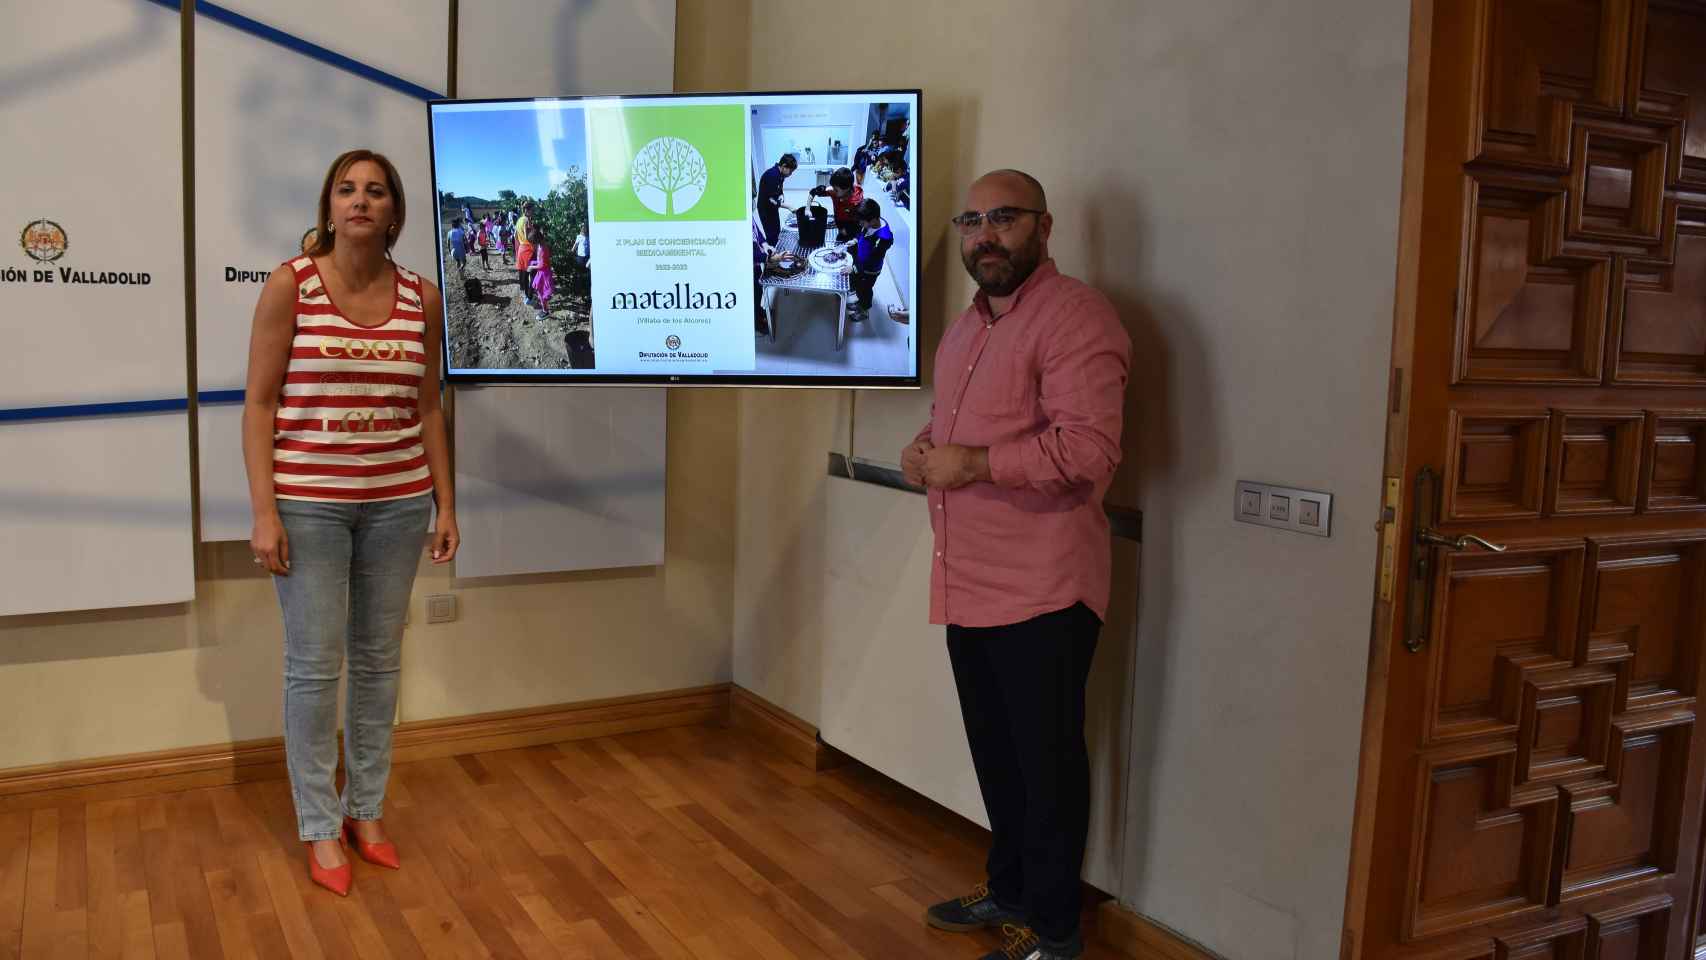 Presentación del X Plan de Concienciación Medioambiental en la Diputación de Valladolid